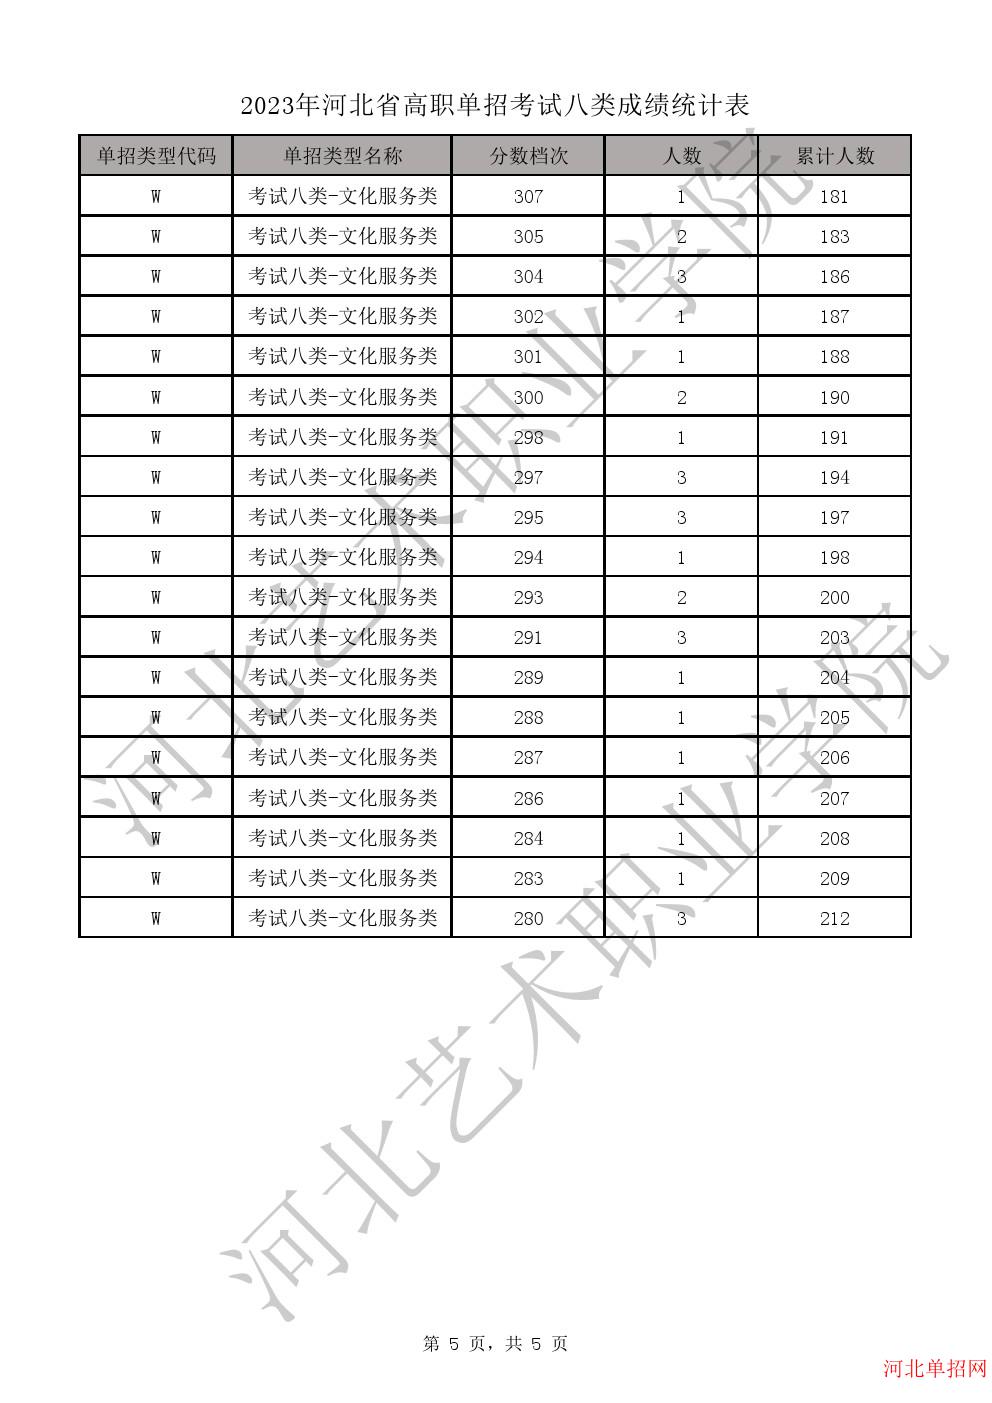 2023年河北省高职单招考试八类成绩统计表-W学问服务类一分一档表 图5